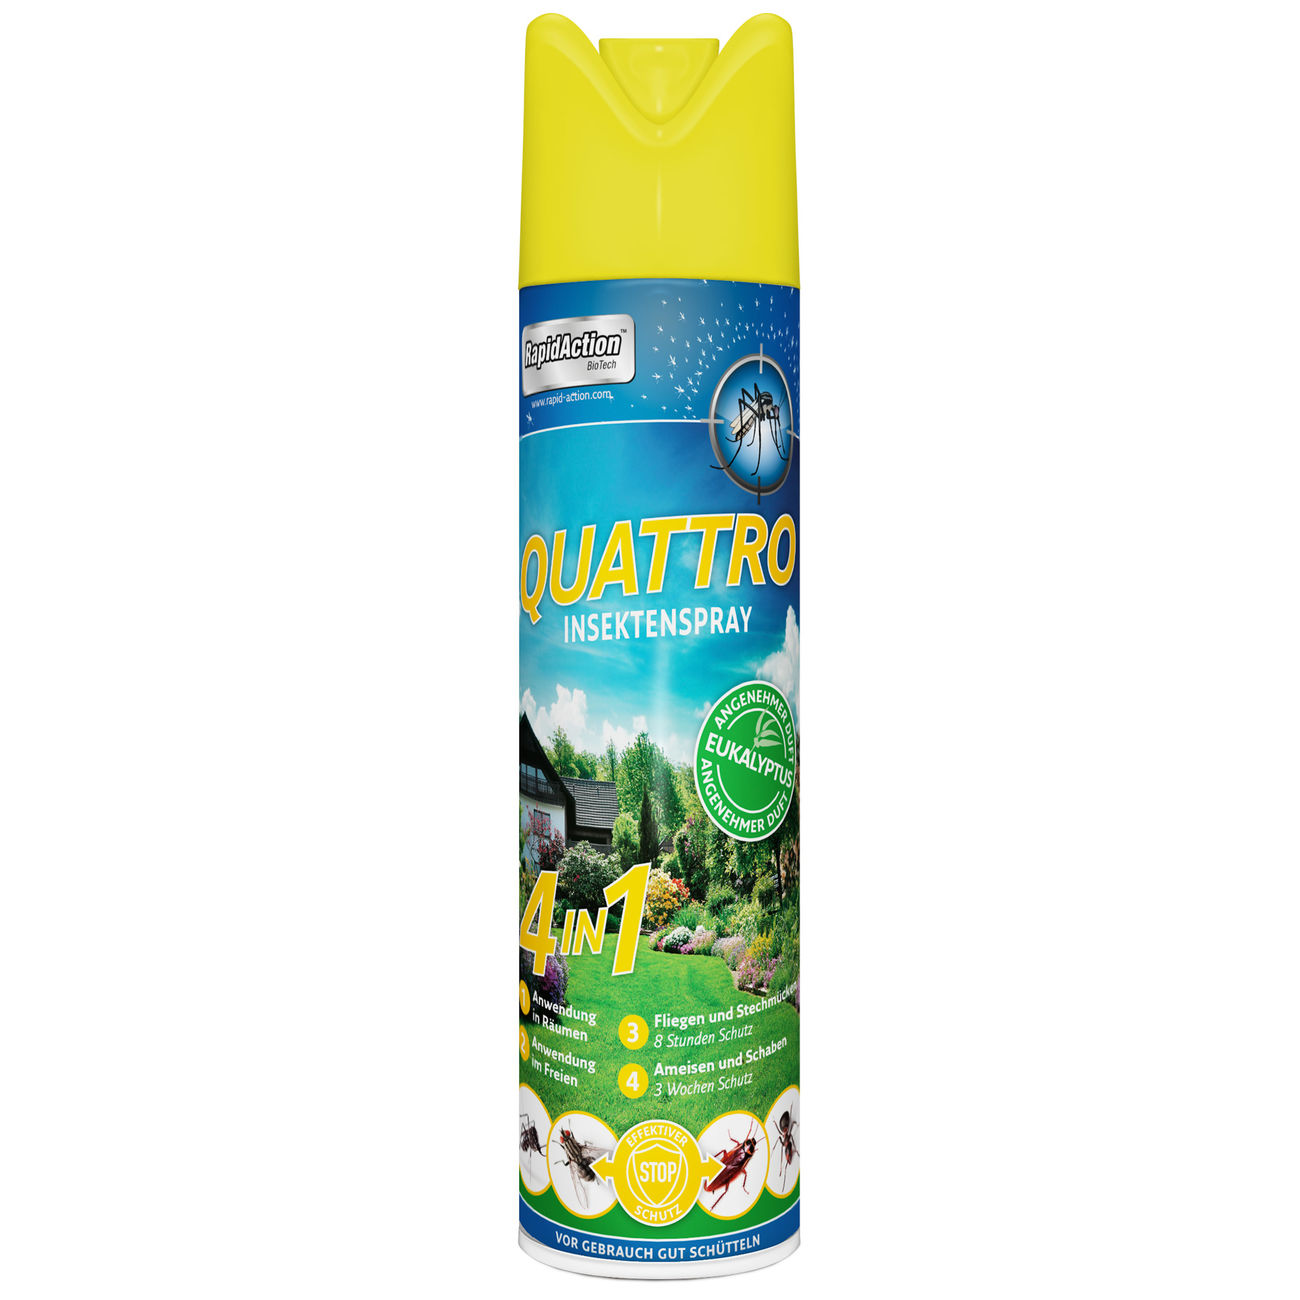 Rapid Action Insektenspray Quattro 600 ml zur Abwehr von Insekten